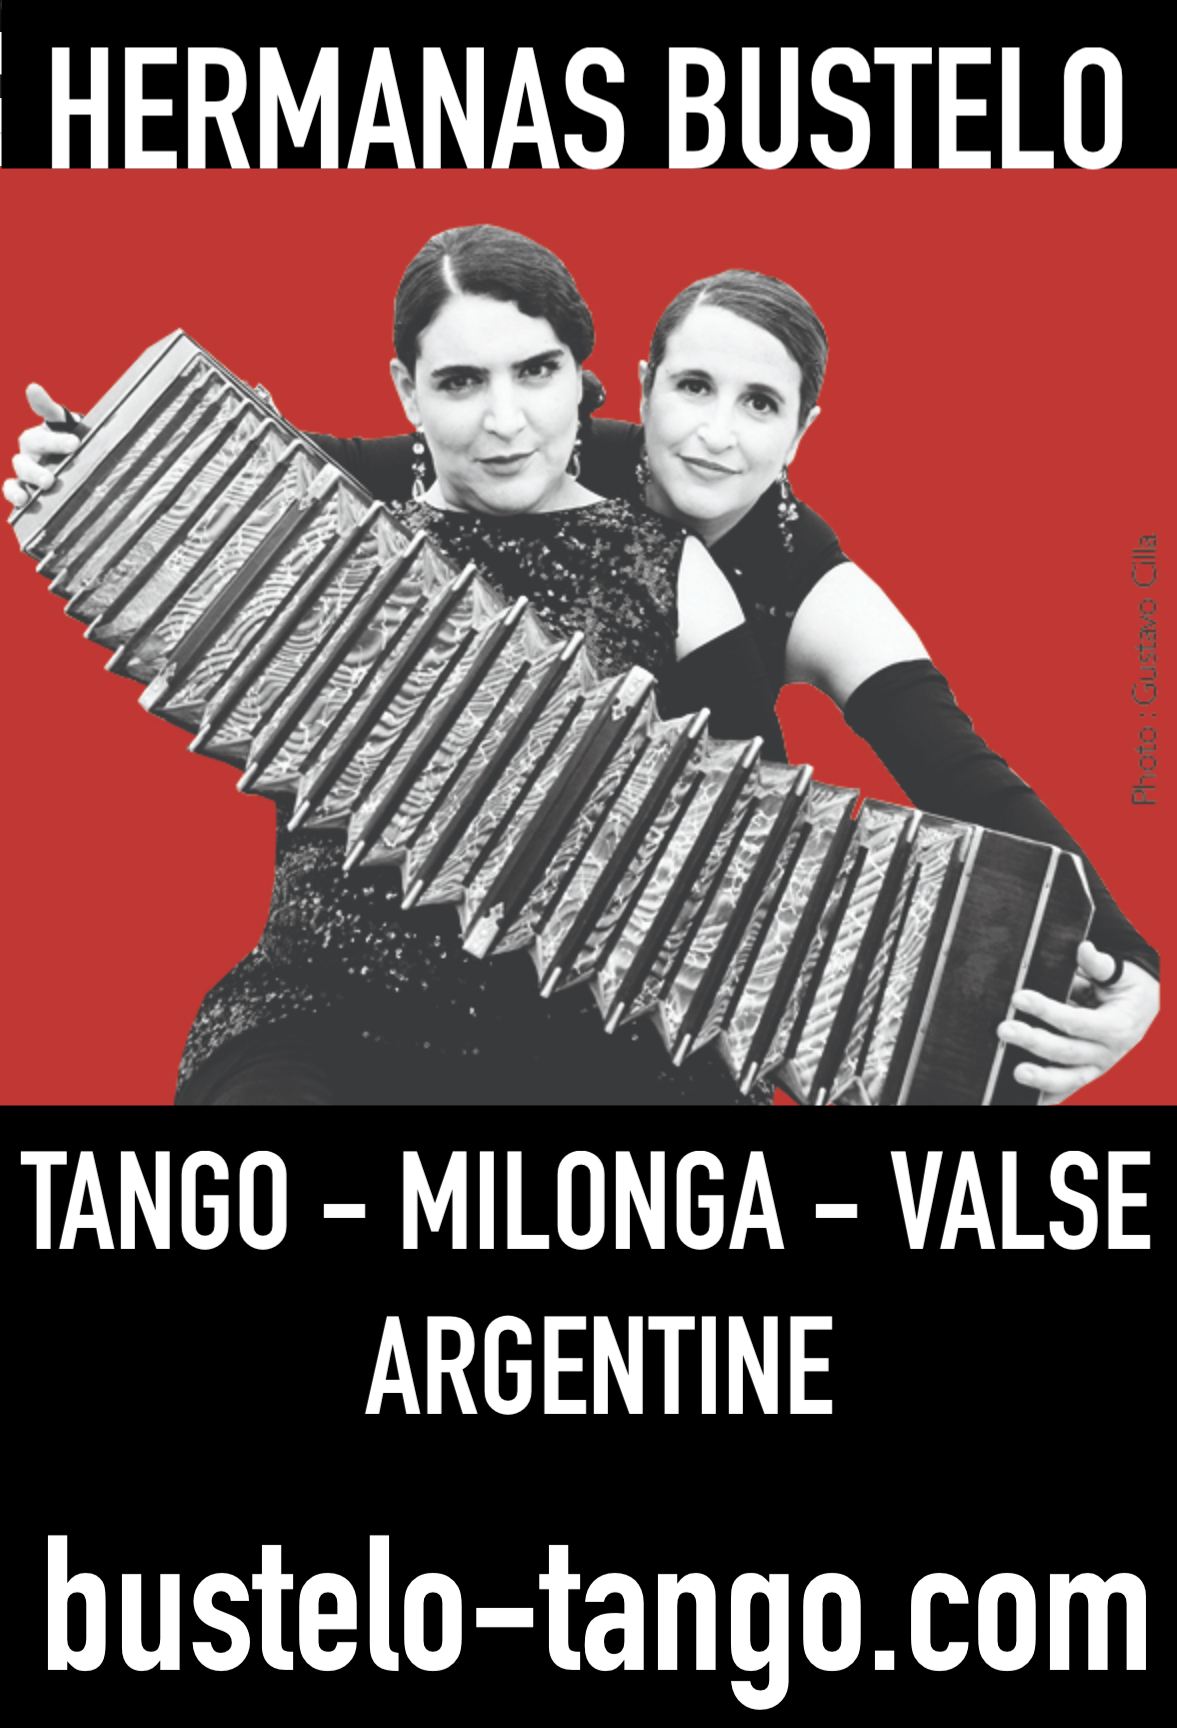 Les Sœurs Bustelo cours de Tango Argentin à Paris